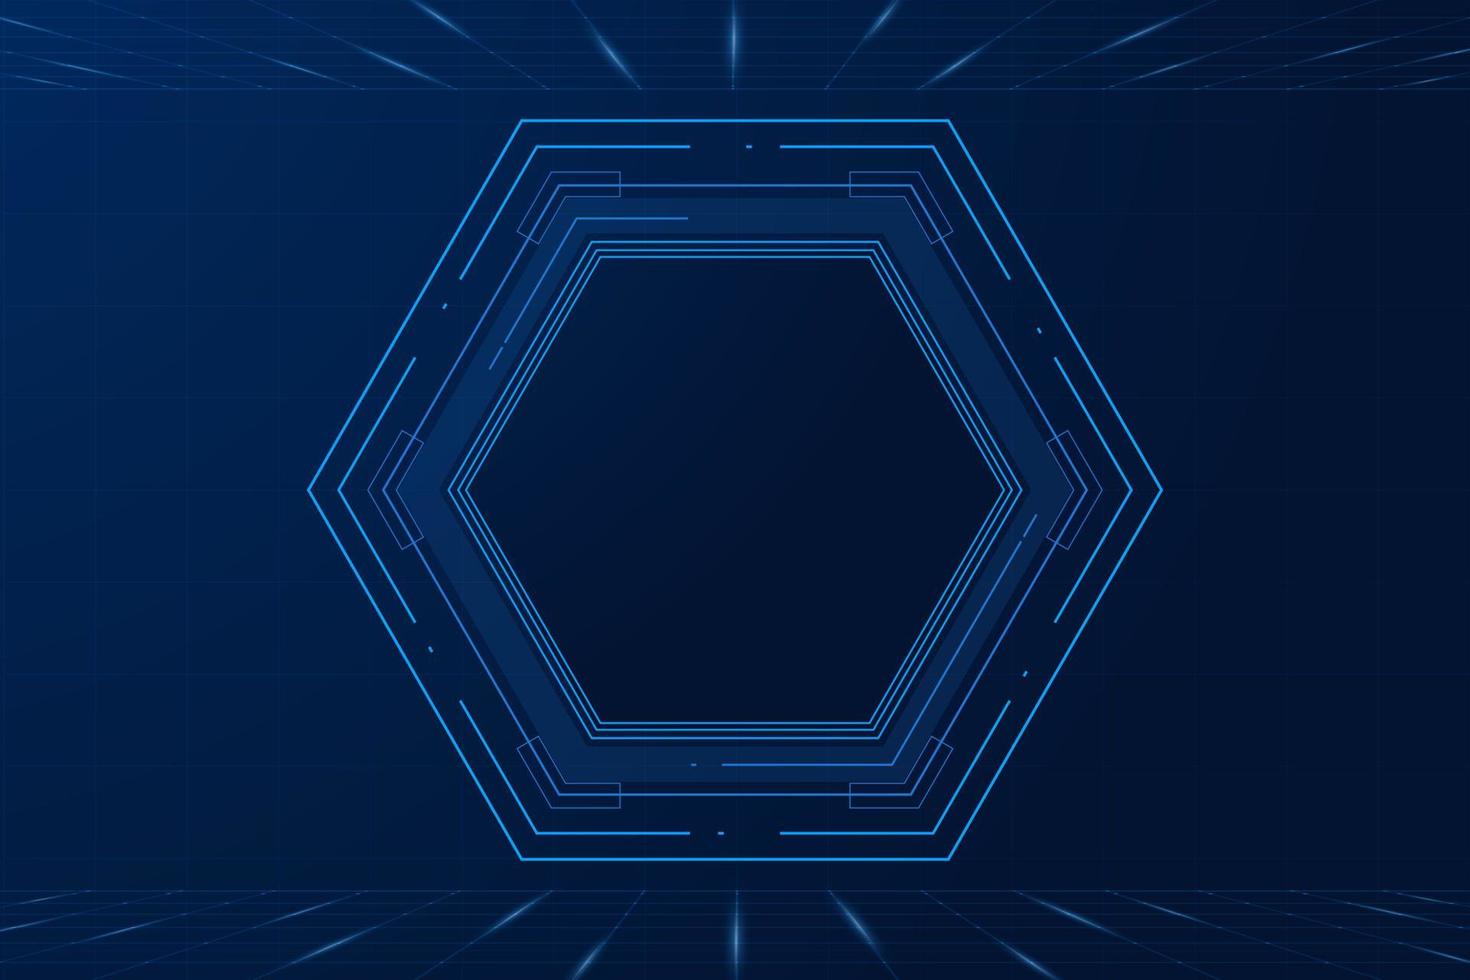 padrão futurista hexagonal de ficção científica vetorial, fundo de tecnologia futura de inovação, vetor